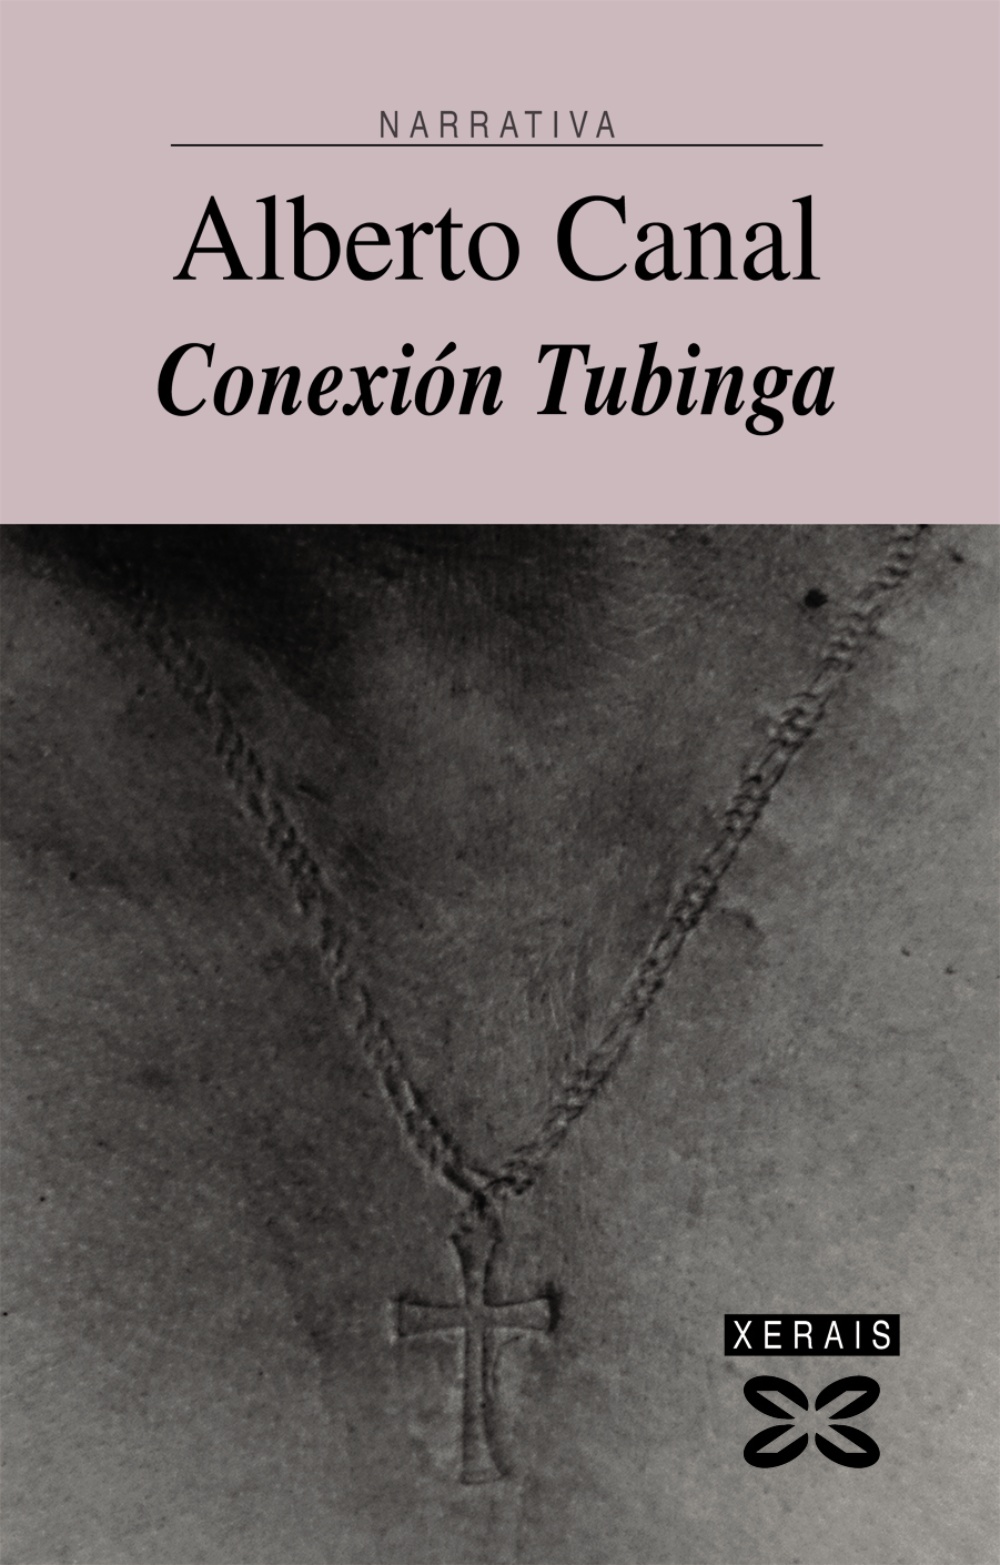 Conexión Tubinga